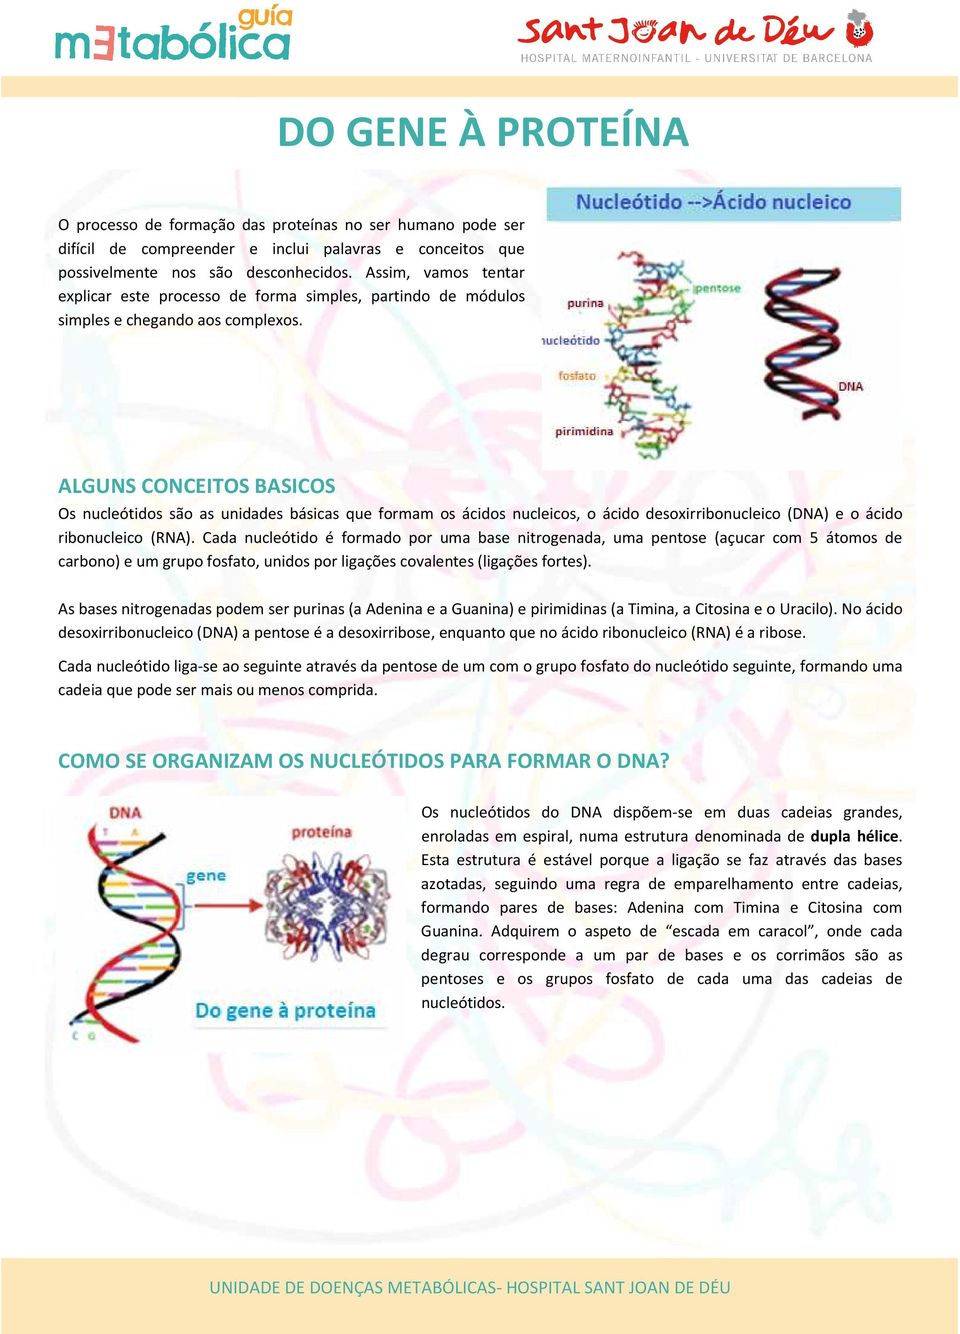 ALGUNS CONCEITOS BASICOS Os nucleótidos são as unidades básicas que formam os ácidos nucleicos, o ácido desoxirribonucleico (DNA) e o ácido ribonucleico (RNA).